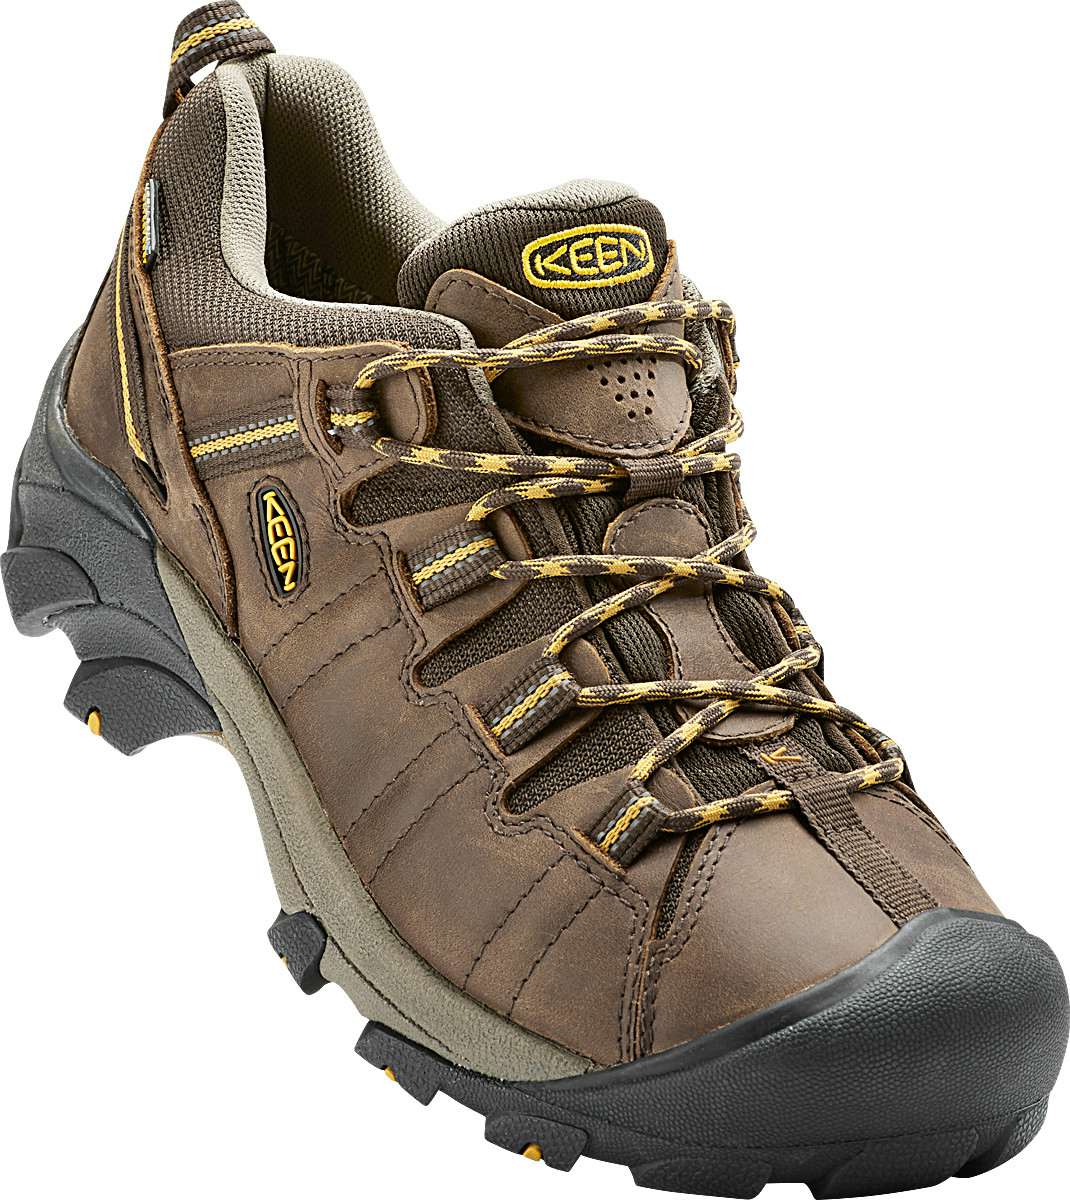 Targhee II Low Waterproof Light Trail Shoes Cascade Brown/Golden Yell